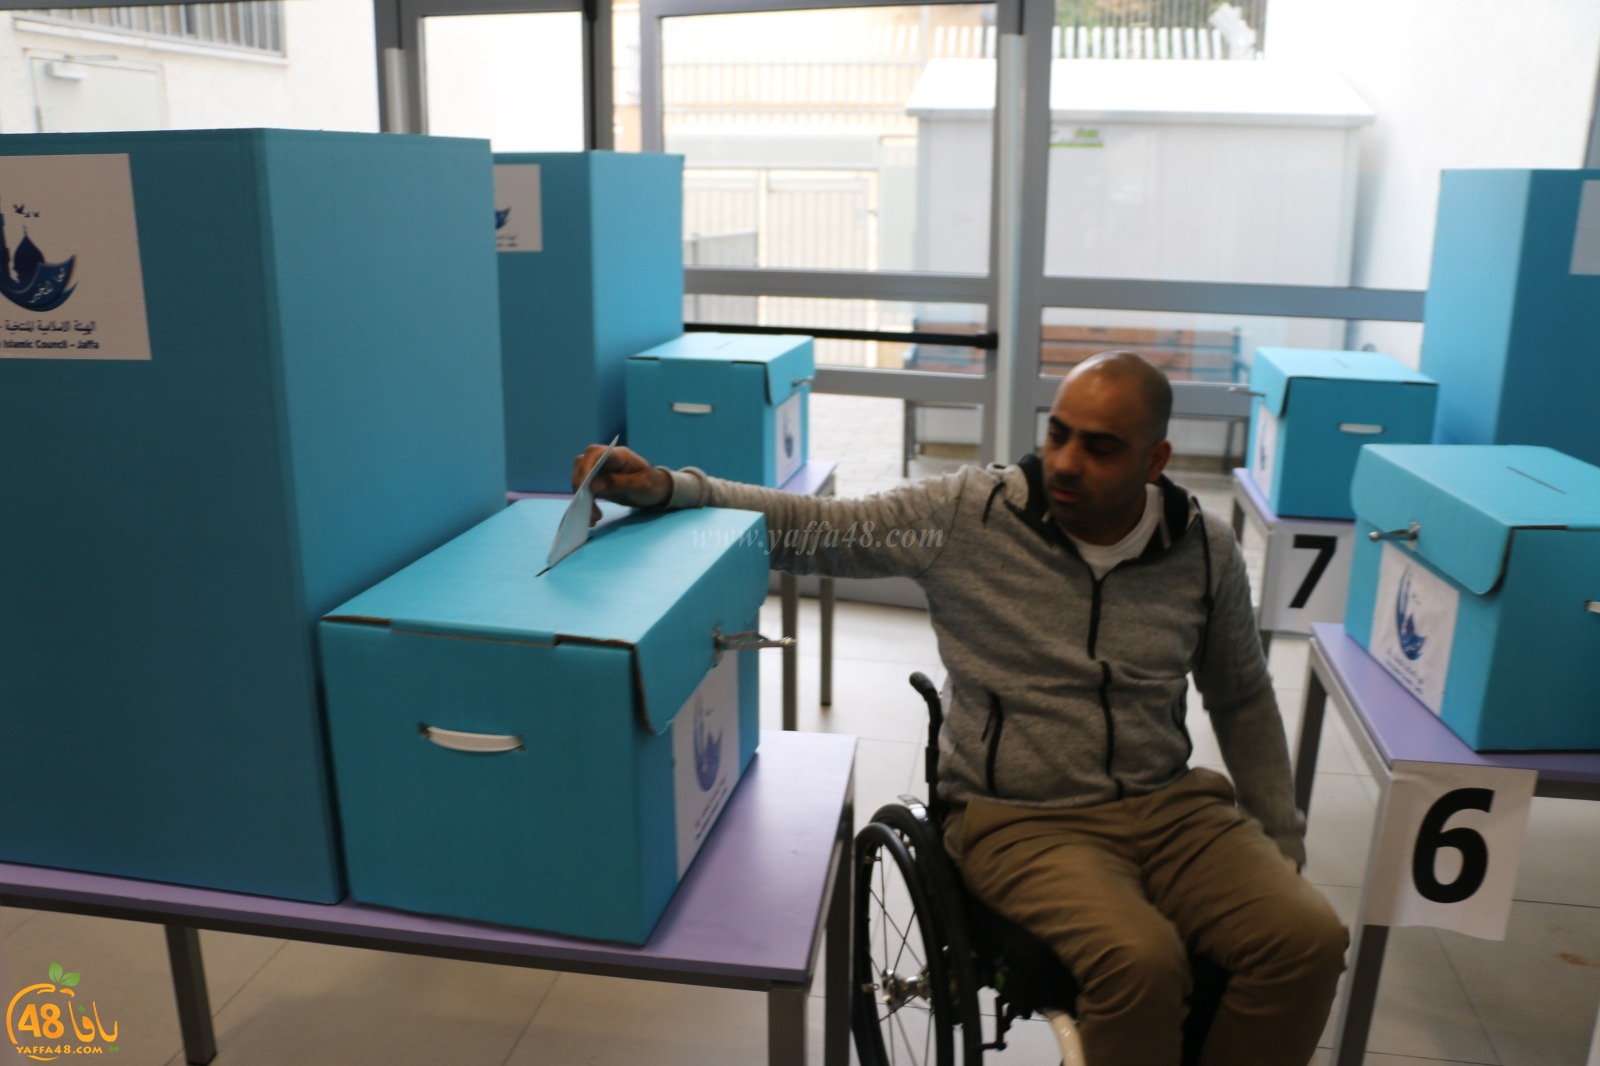  بالصور: لجنة الانتخابات تُوفّر صندوق متنقل لخدمة العاجزين عن الوصول لمقر الانتخابات